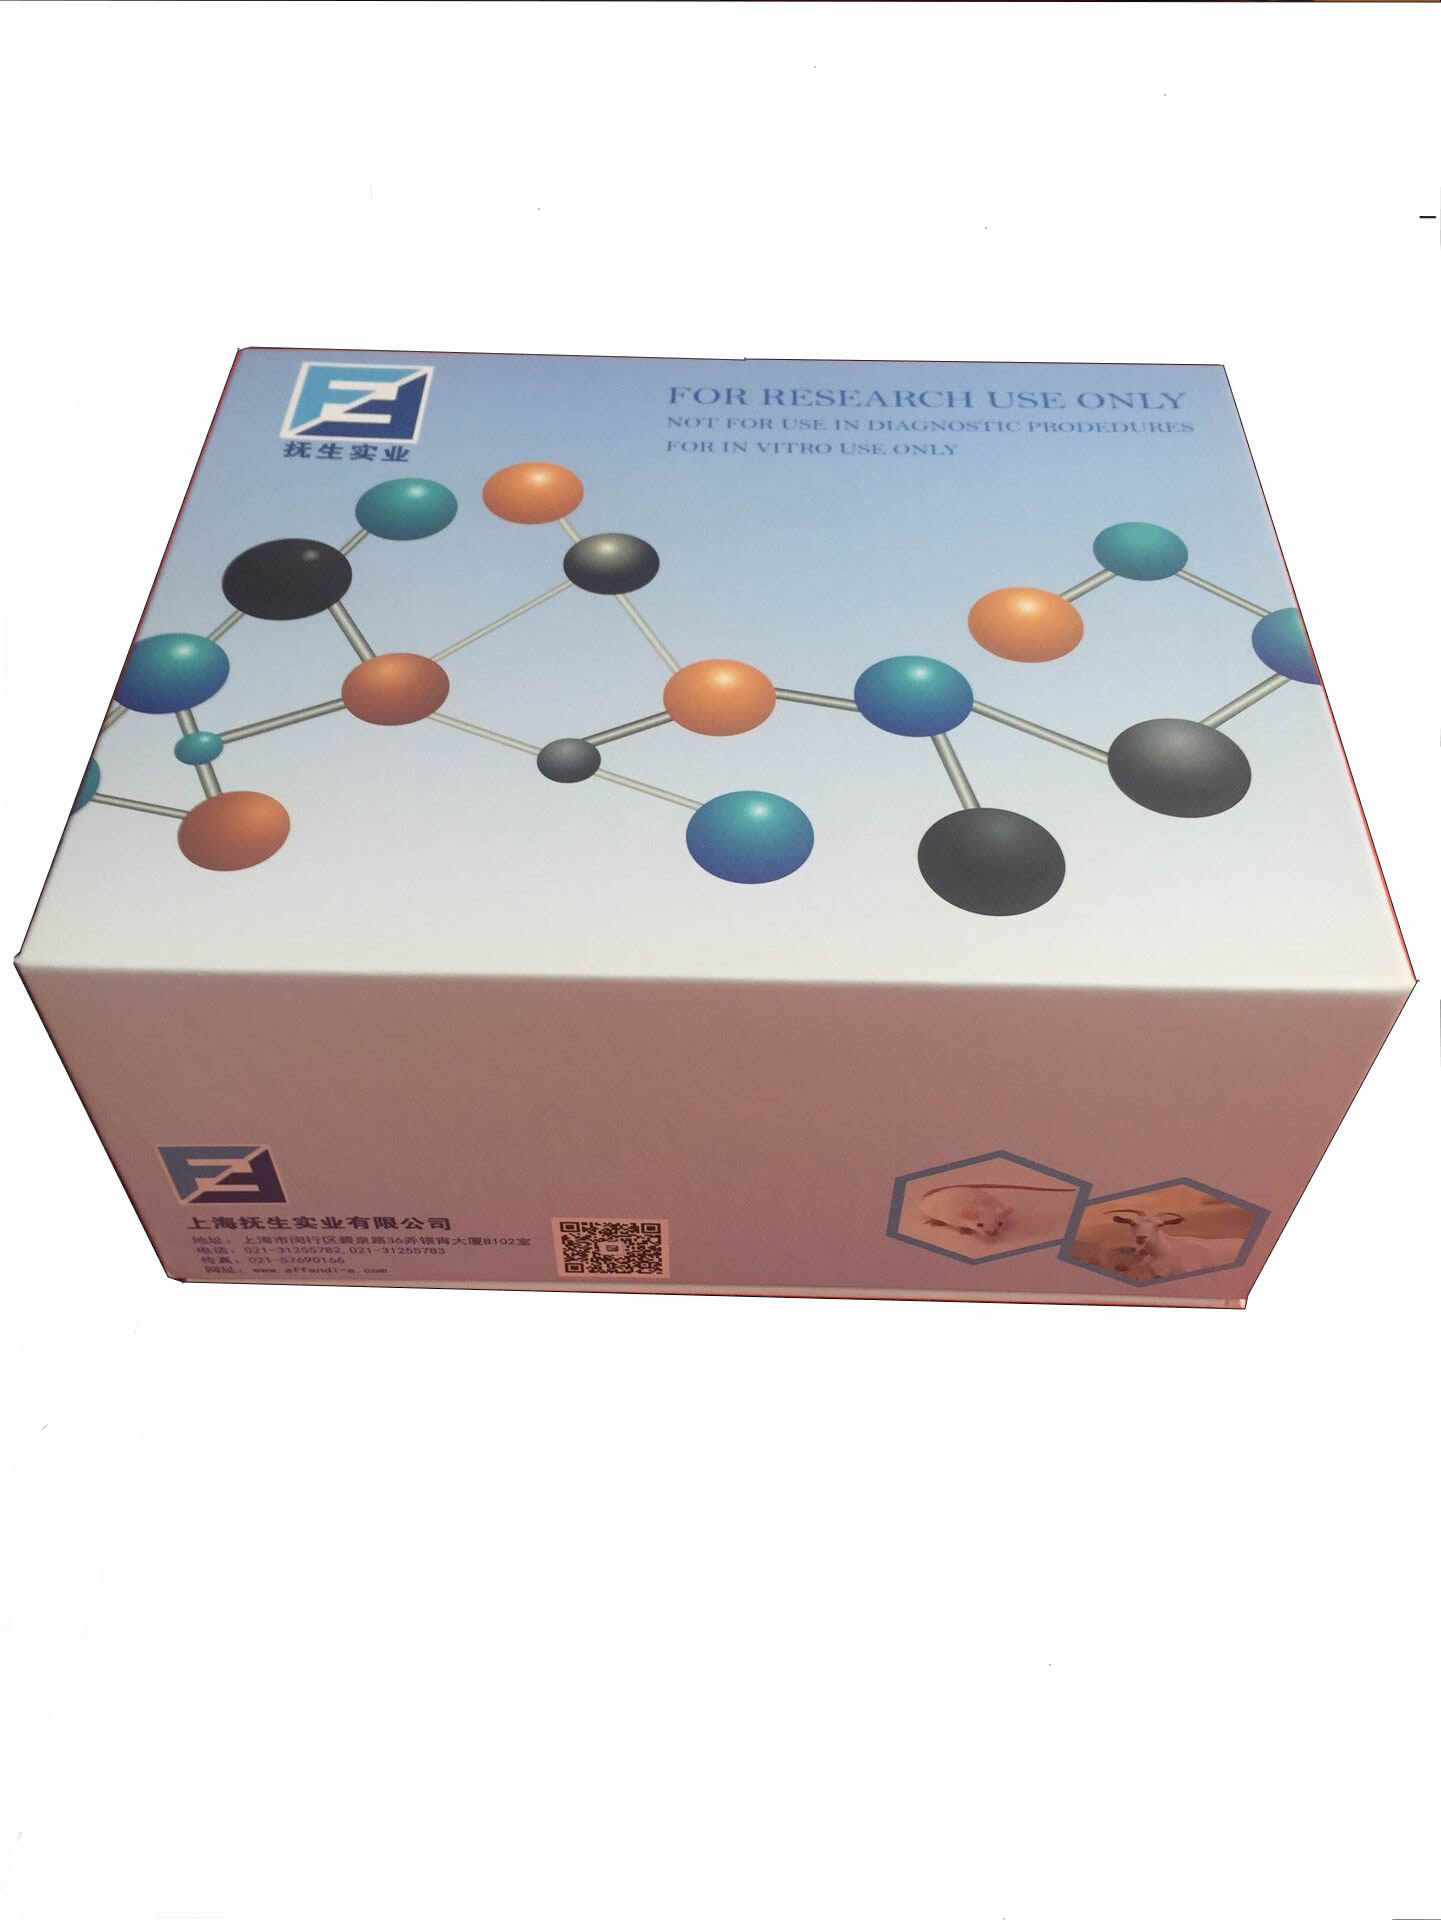 磷脂酸磷酸酯酶检测试剂盒 